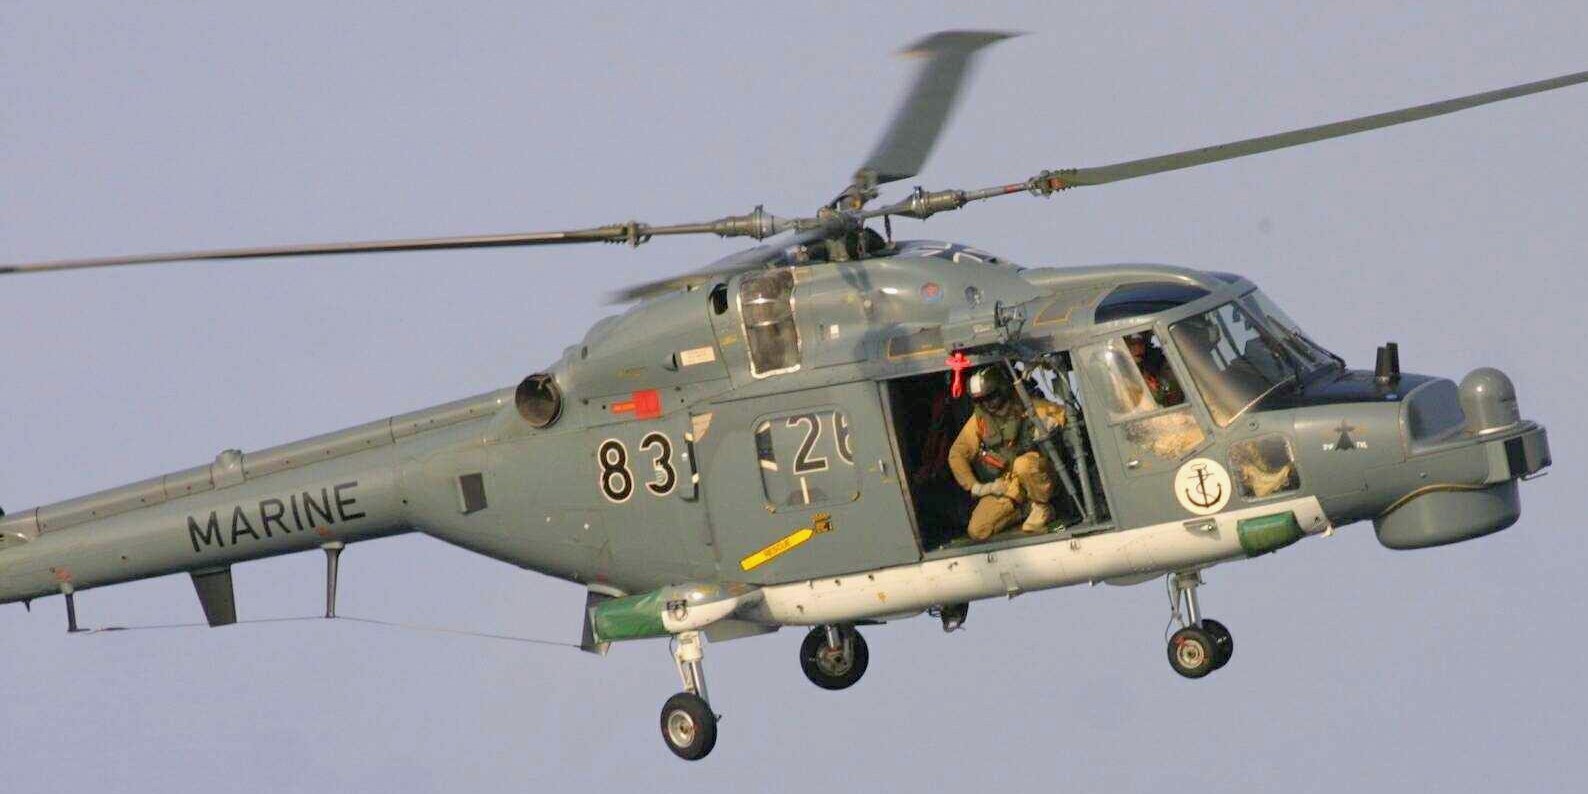 sea lynx mk.88a westland naval helicopter german navy deutsche marine 100